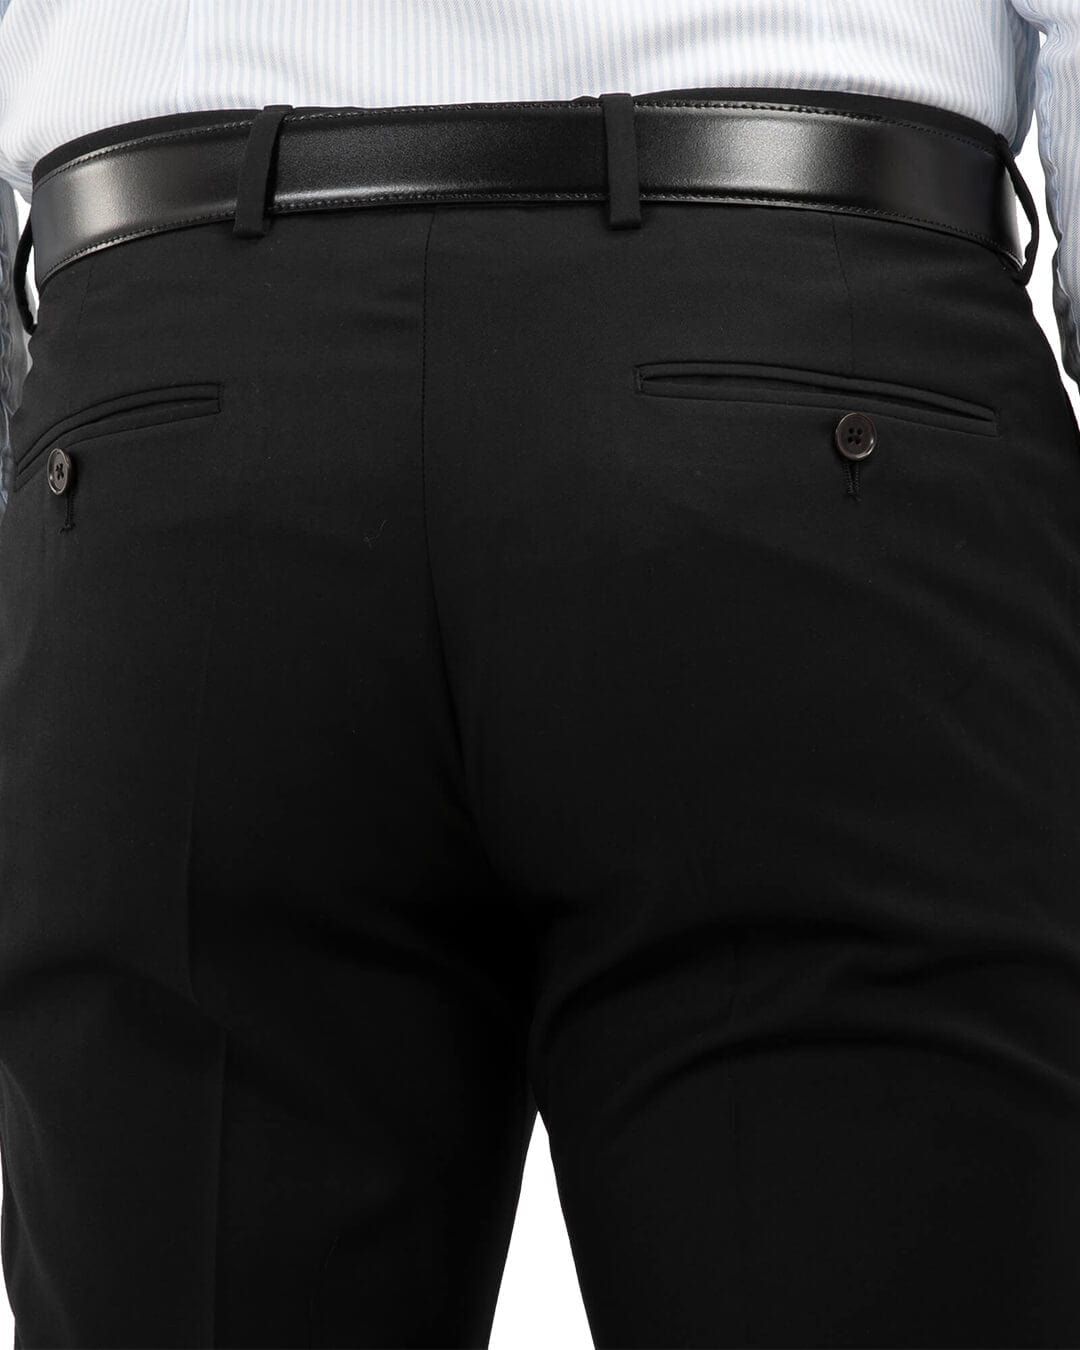 Black Machine Washable Trousers